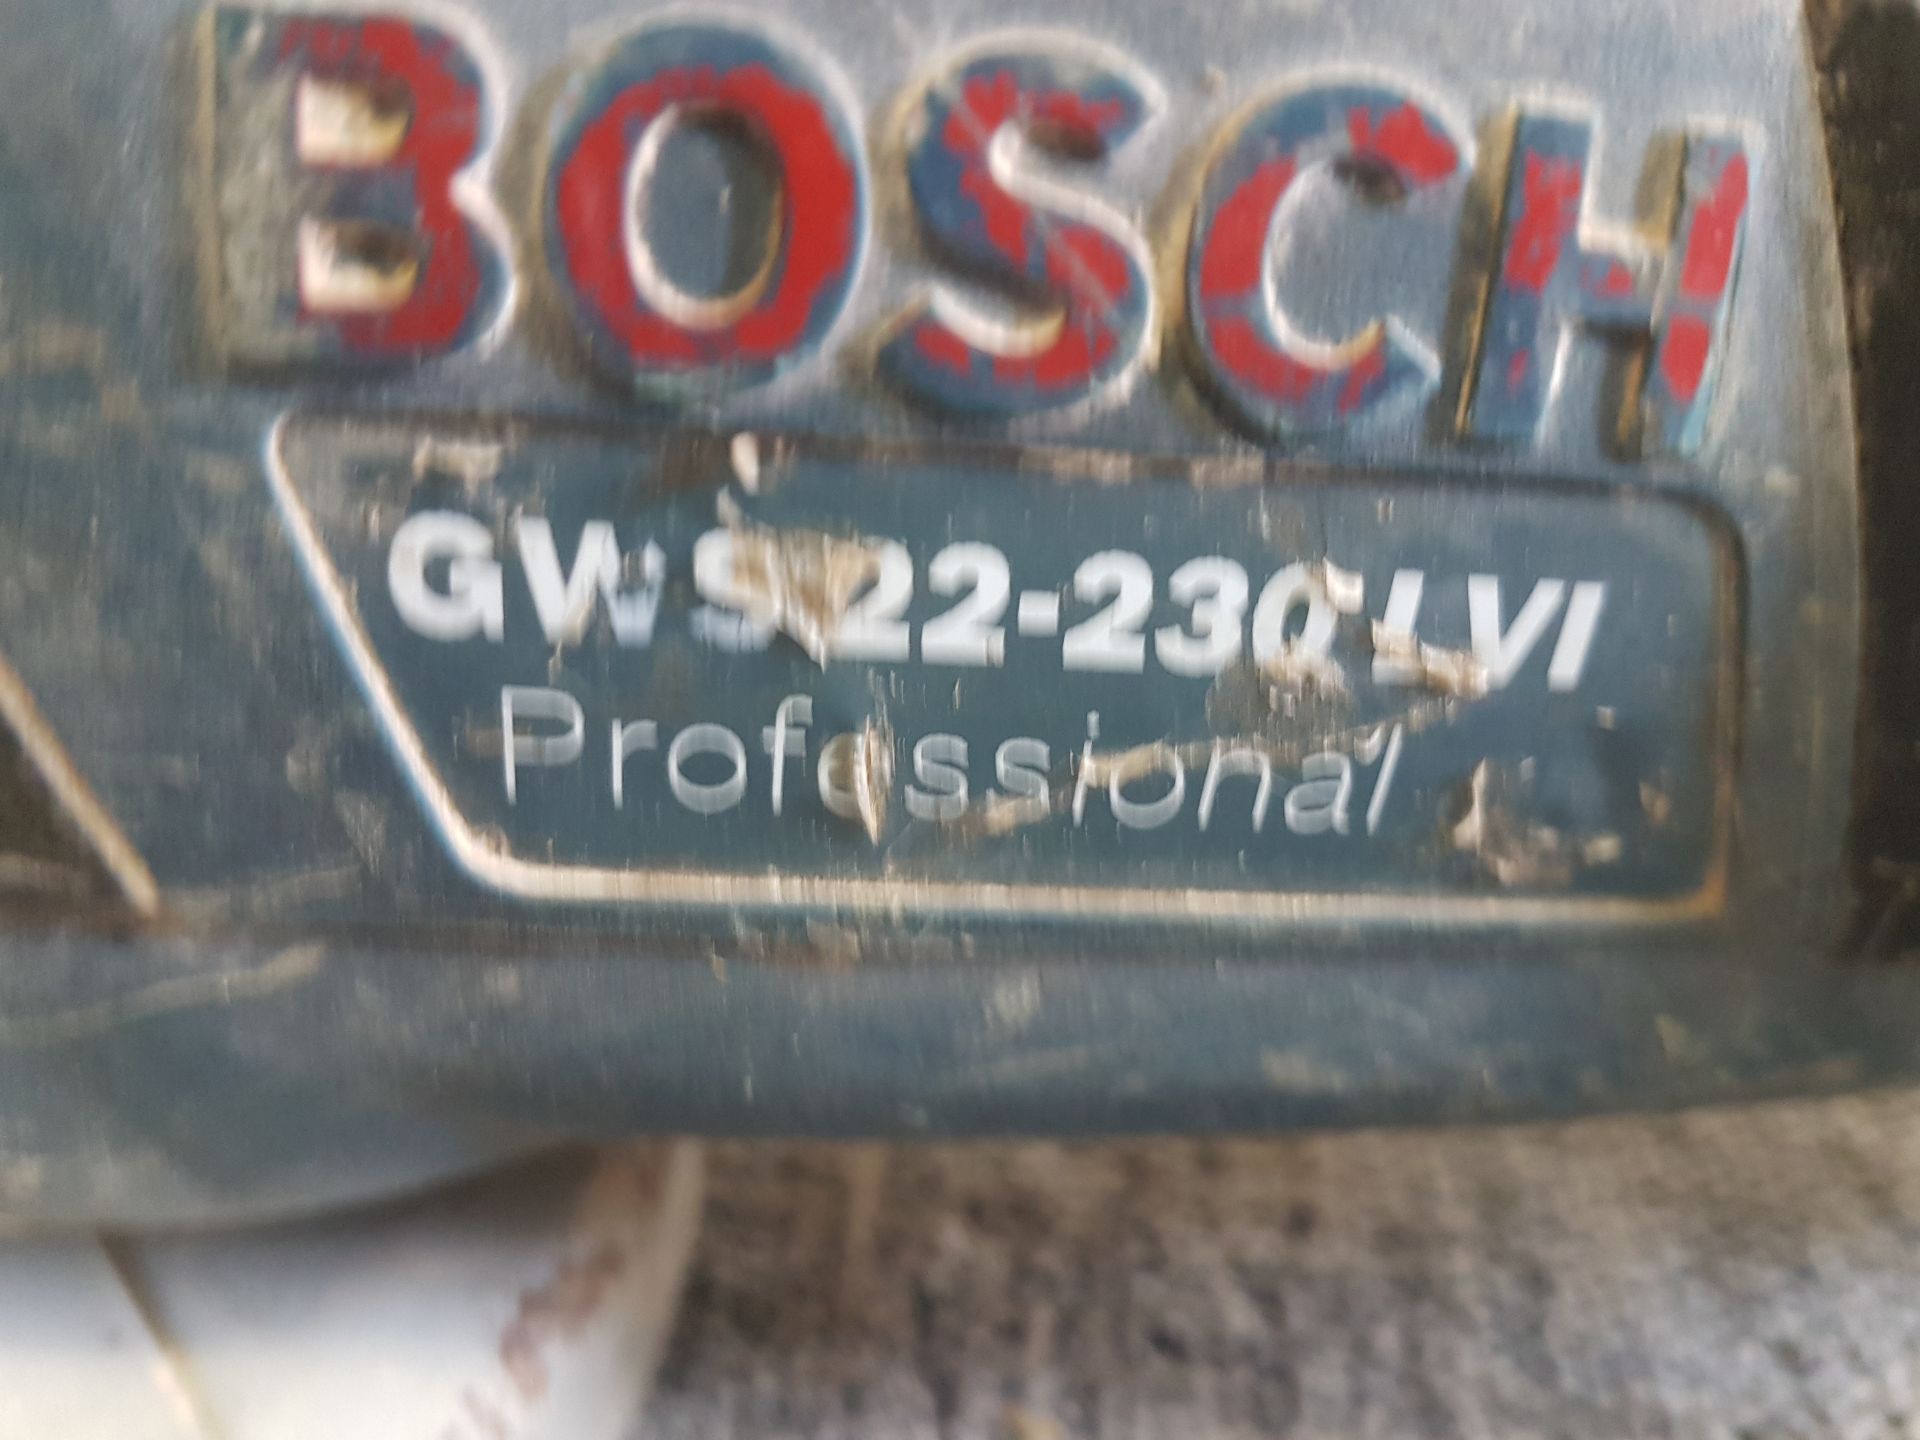 Bosch GWS 22 - 230 LVI 9" Grinder 110v - Tested / In Working Order - Image 2 of 2